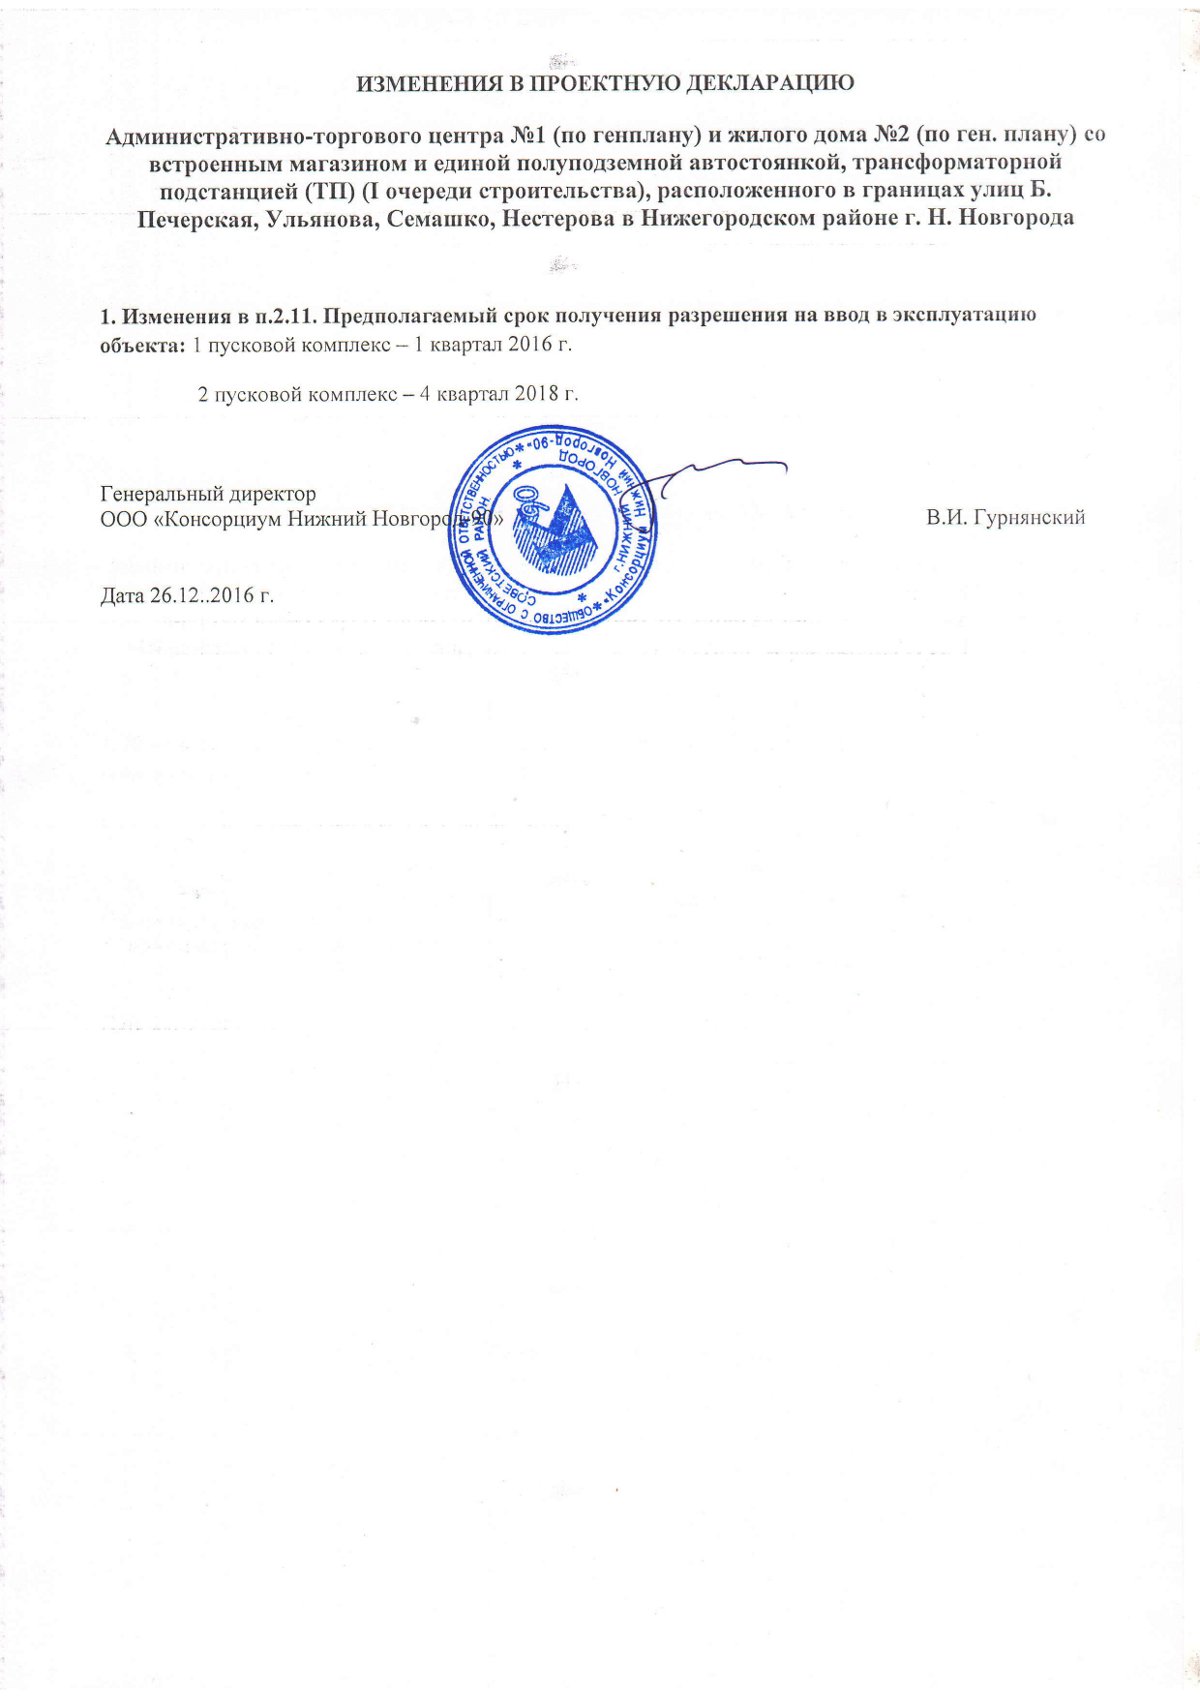 Изменения в проектную декларацию ООО «Консорциум Нижний Новгород-90» - фото 1